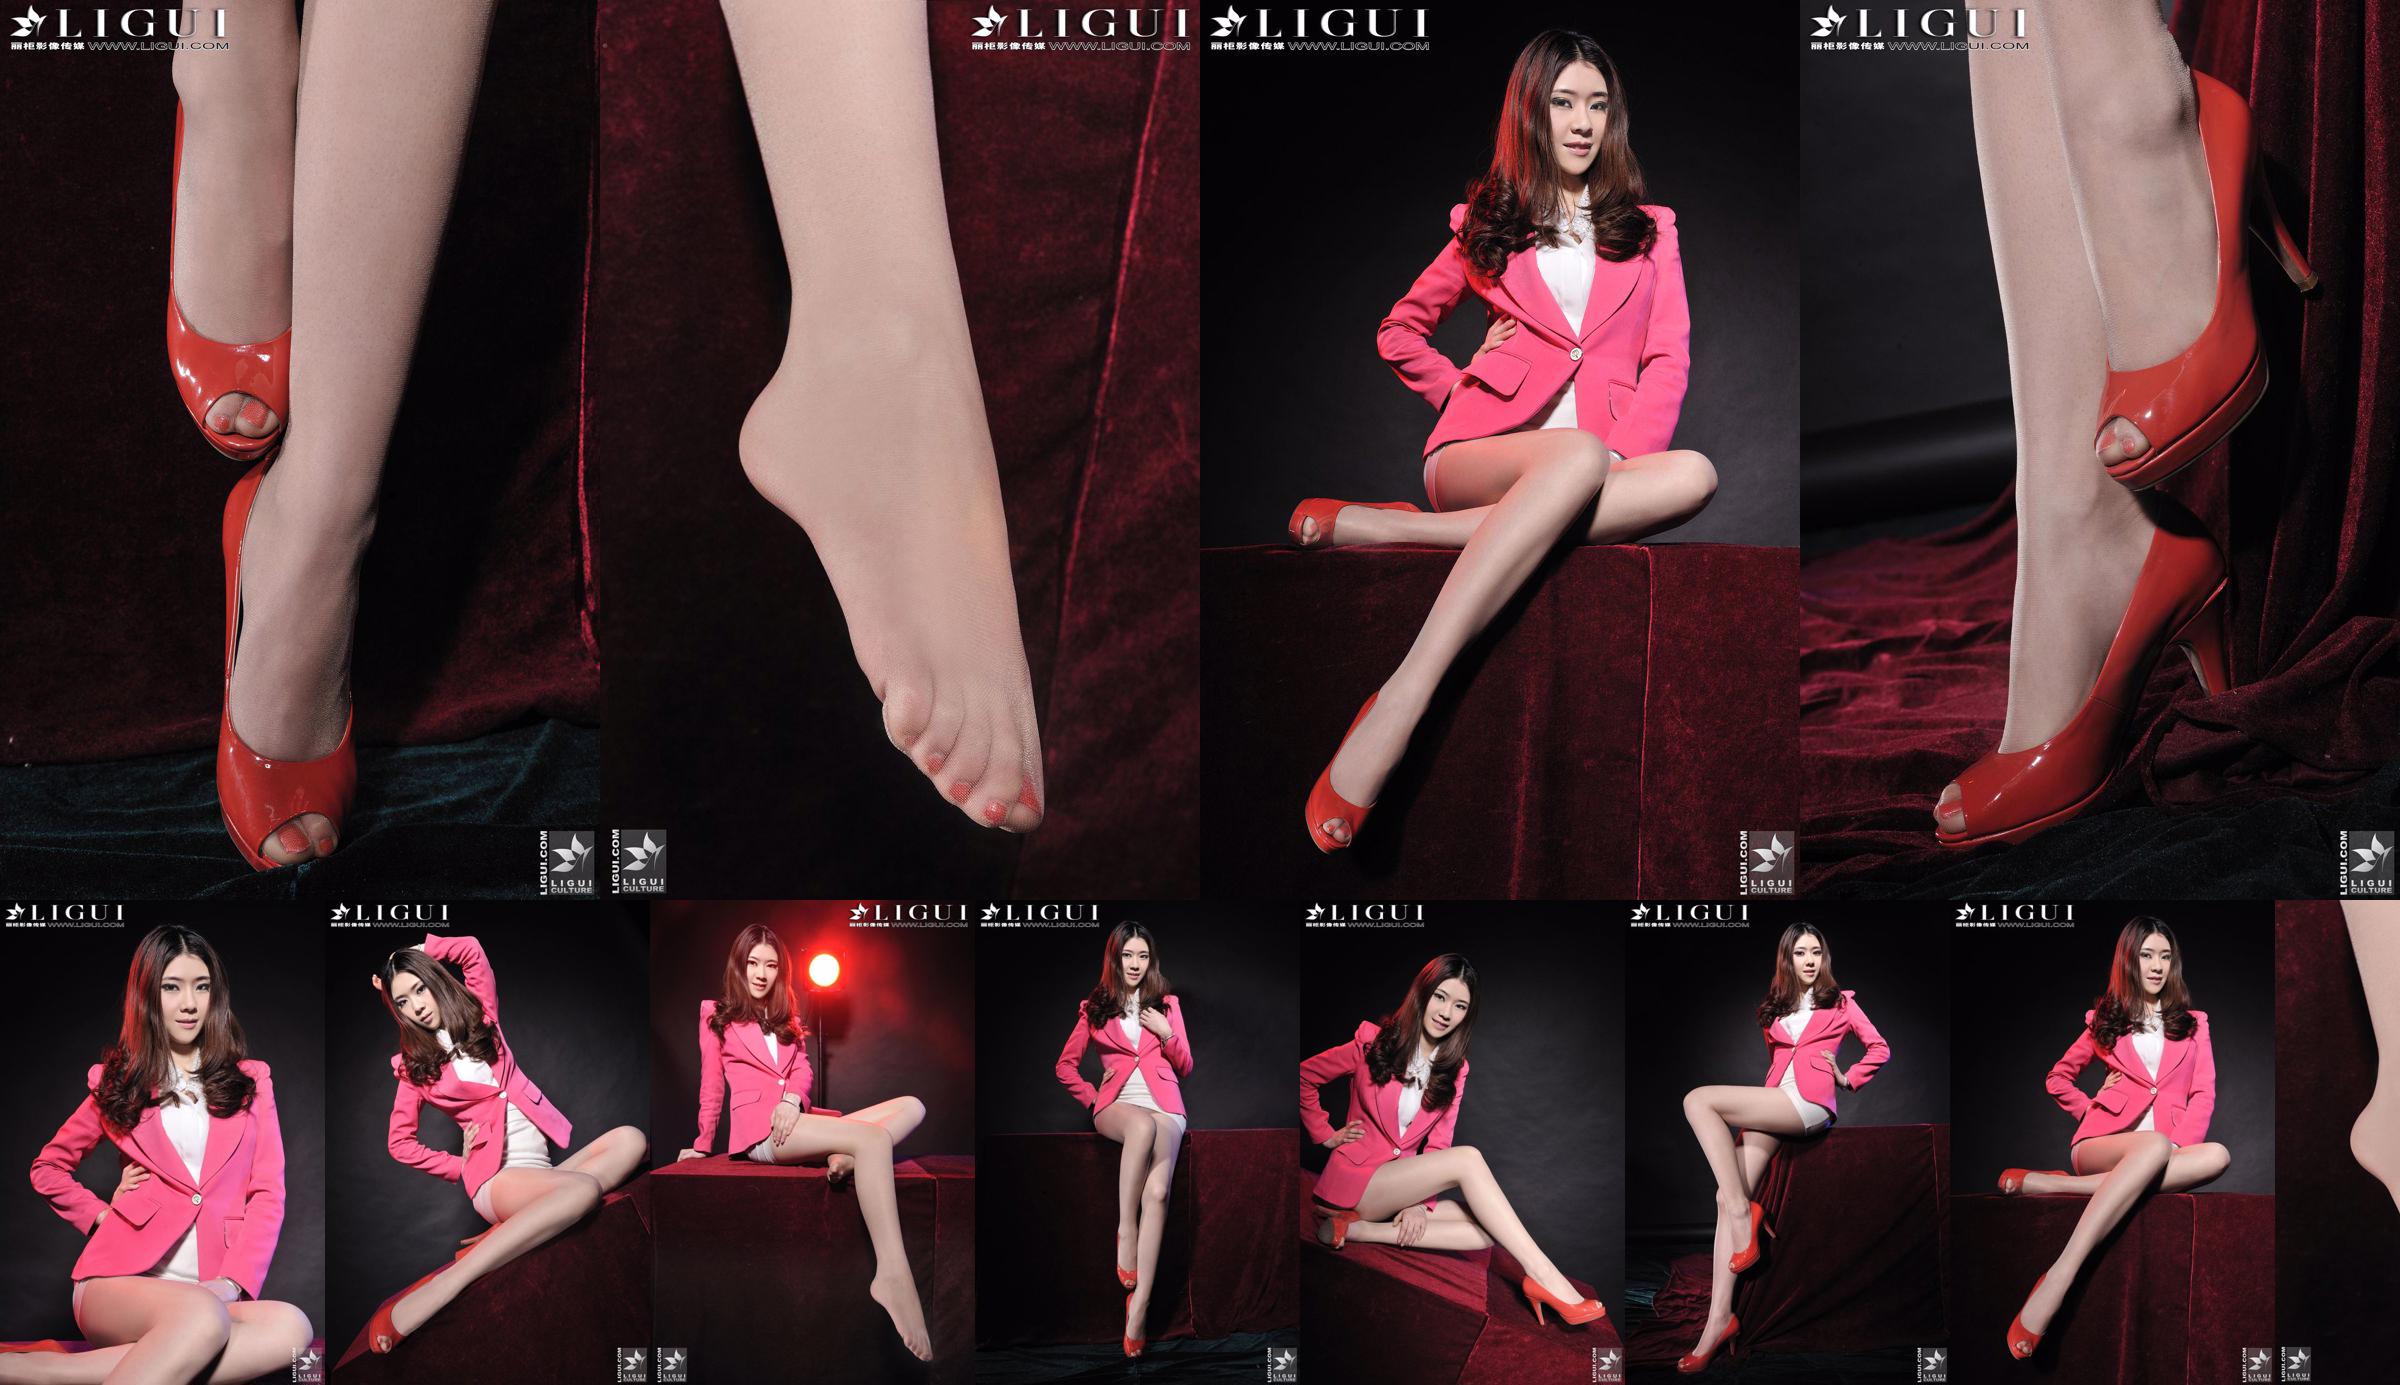 นางแบบ Chenchen "สาวส้นสูงสีแดง" [丽柜 LiGui] รูปถ่ายขาสวยและเท้าหยก No.05ece2 หน้า 3